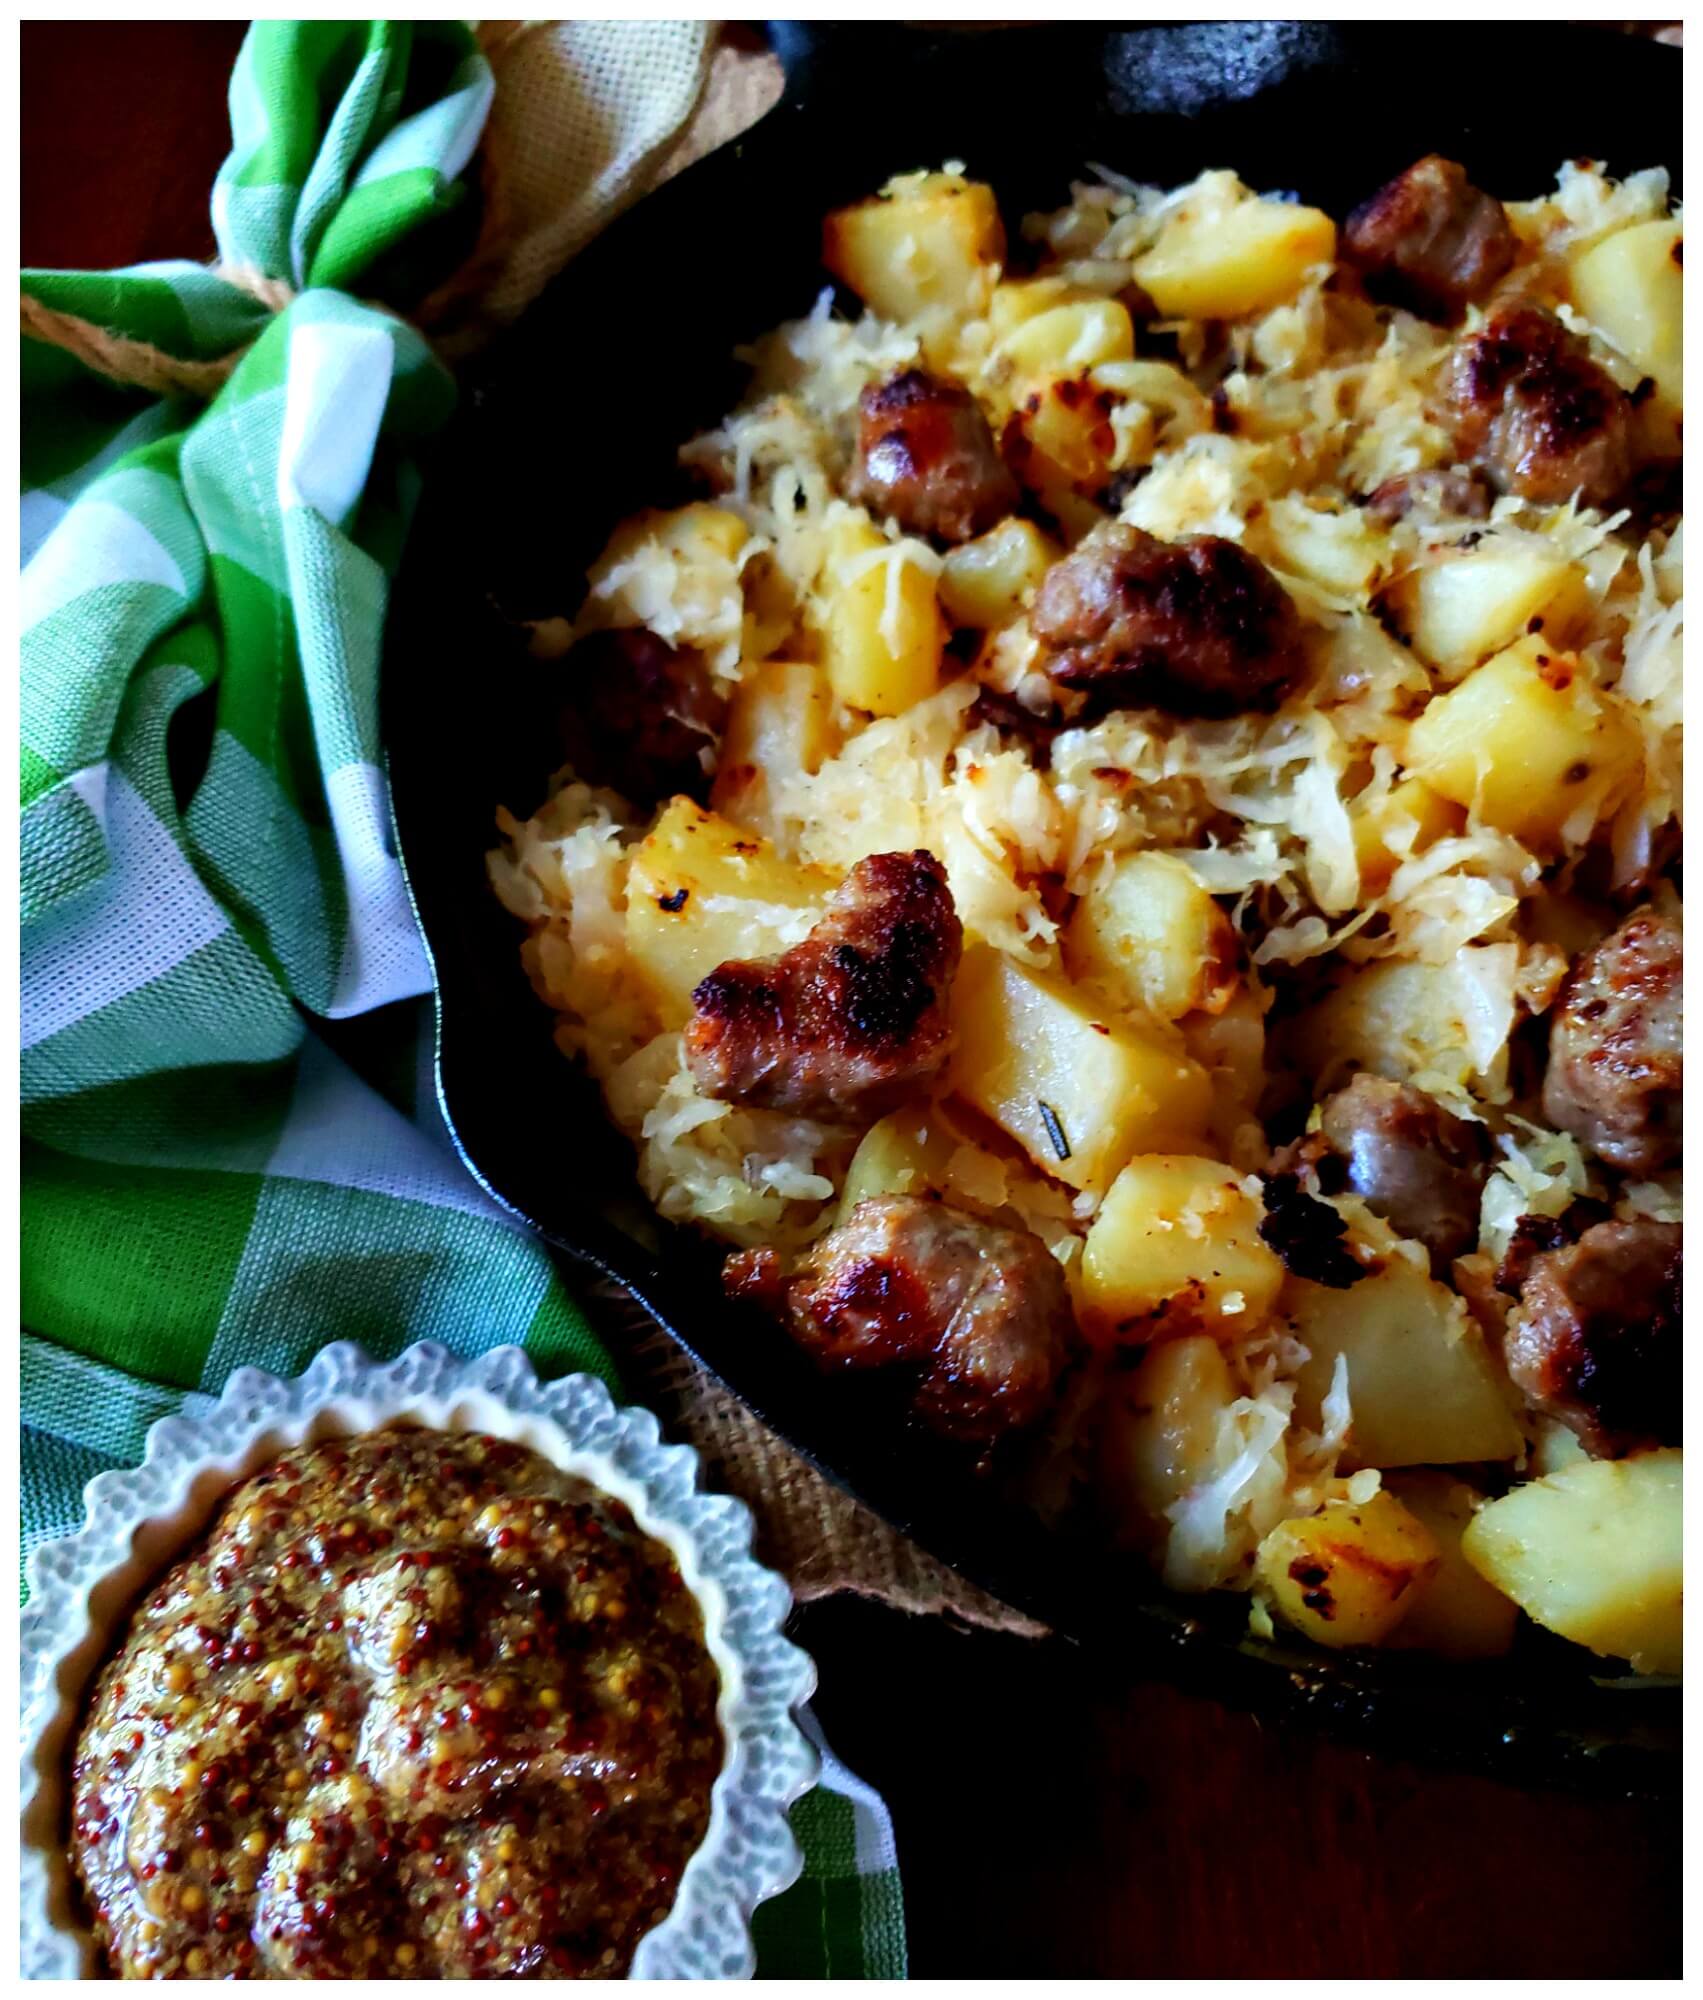 Receta De Curry De Bratwurst Y Patatas: ¡Un Plato Lleno De Sabor!